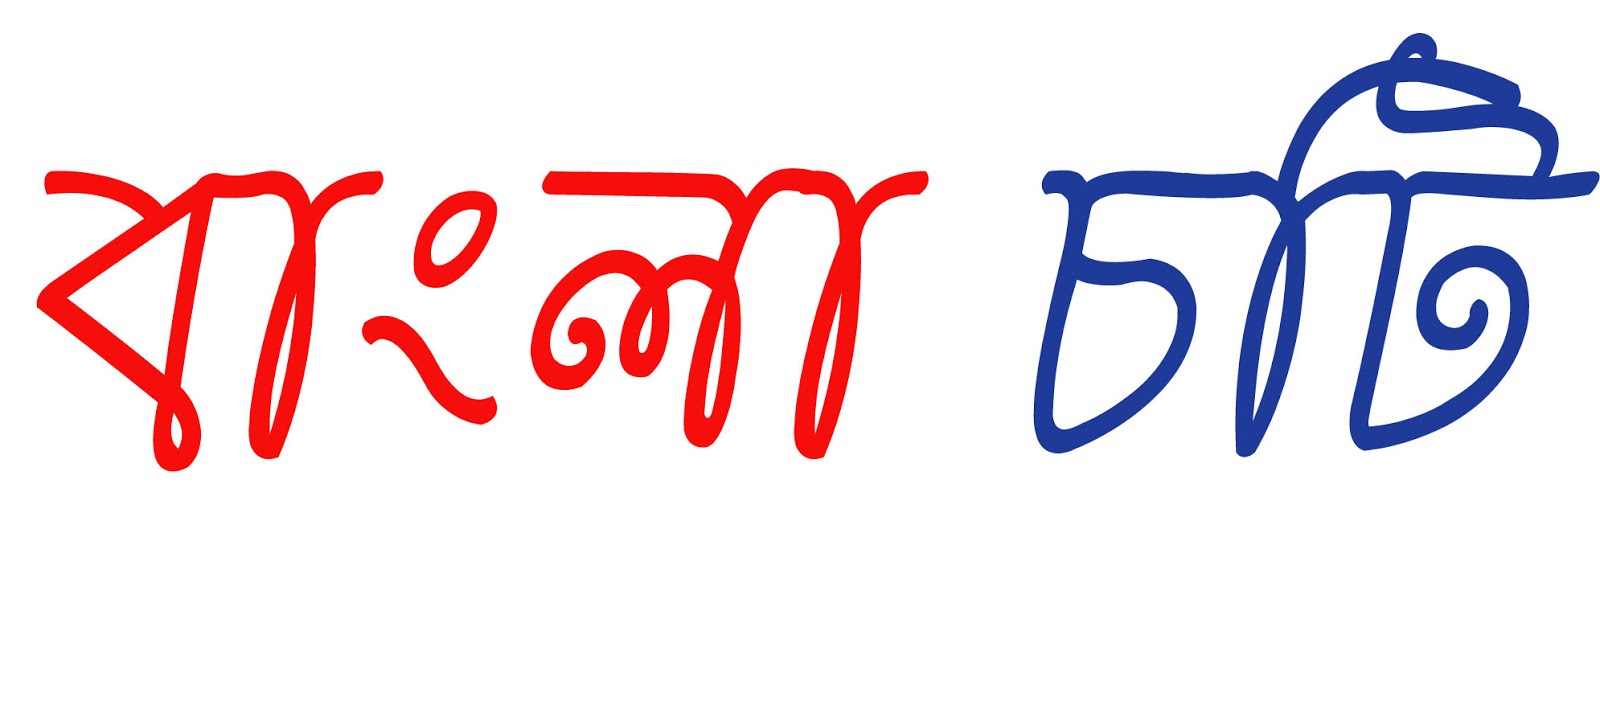 Bangla Choti 4 Fun